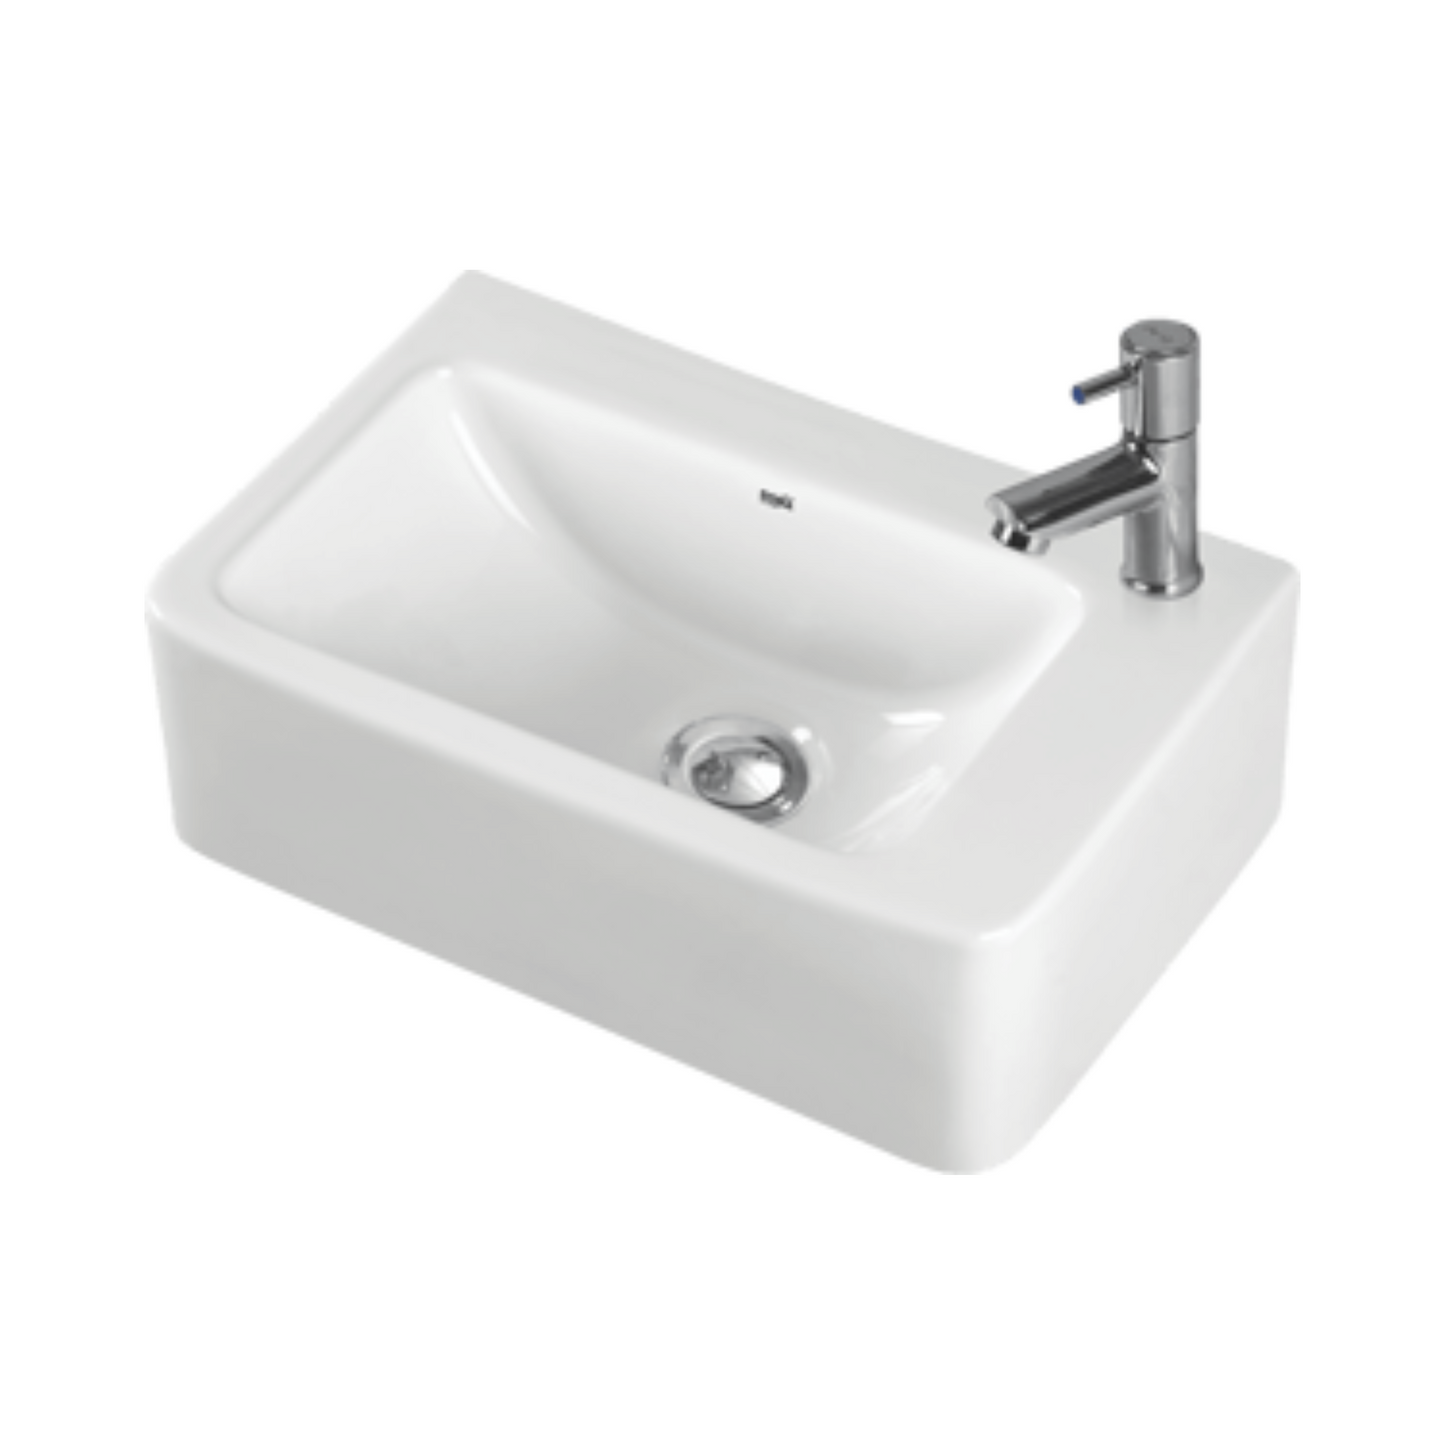 כיור אמבטיה תלוי/מונח לבן מבריק מעוצב דגם SINITH